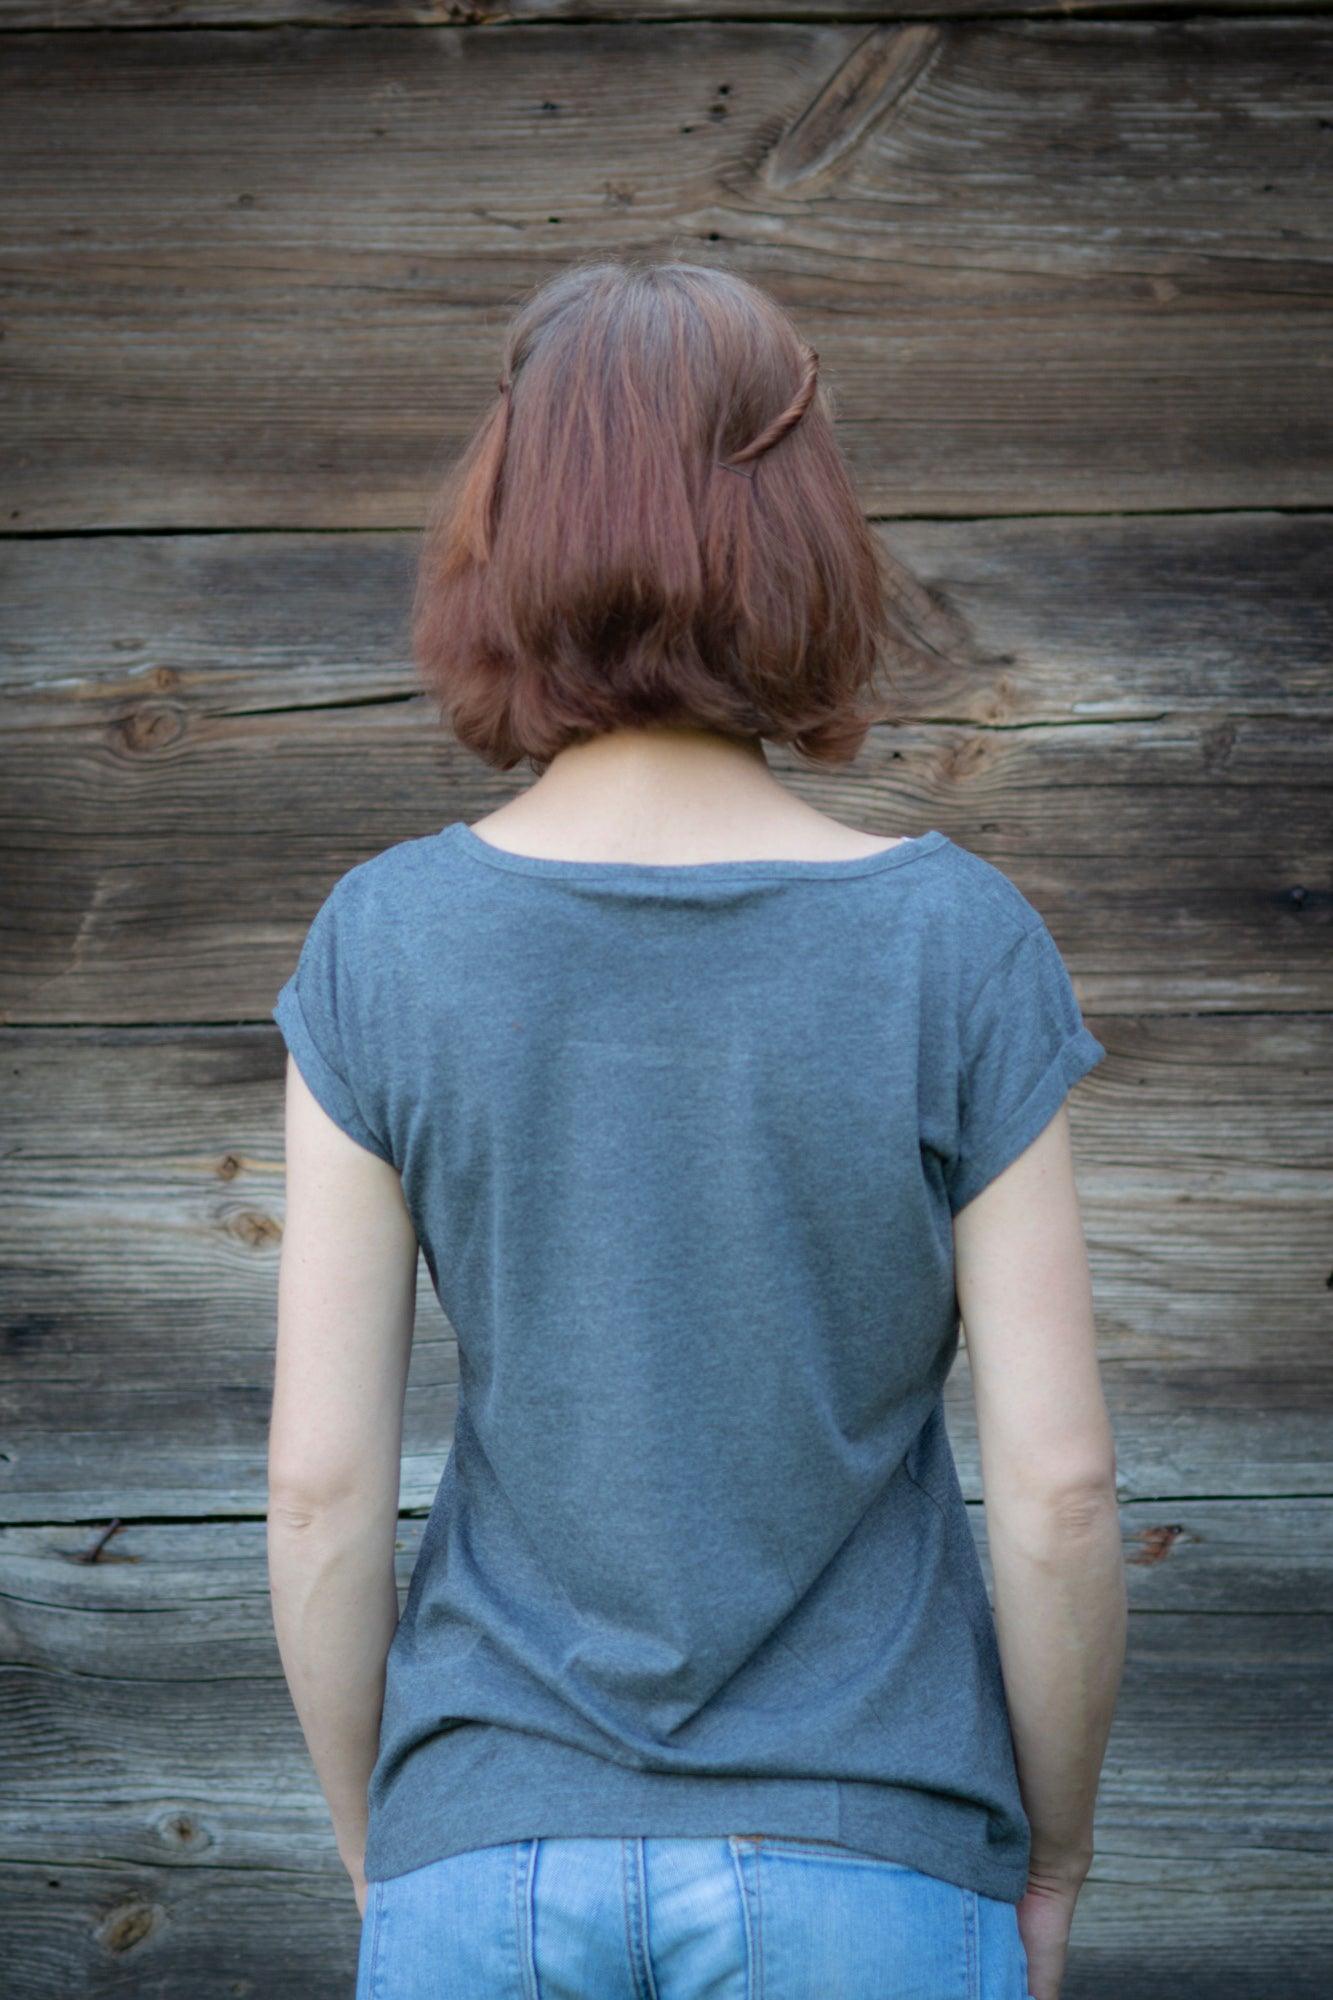 Meitene stāv pie koka mājas sienas pagriezusi muguru. Mugurā tai pelēks T-krekls uz kura sietspiedes tehnikā uzdrukātas piecas tautu meitenes baltā krāsā.